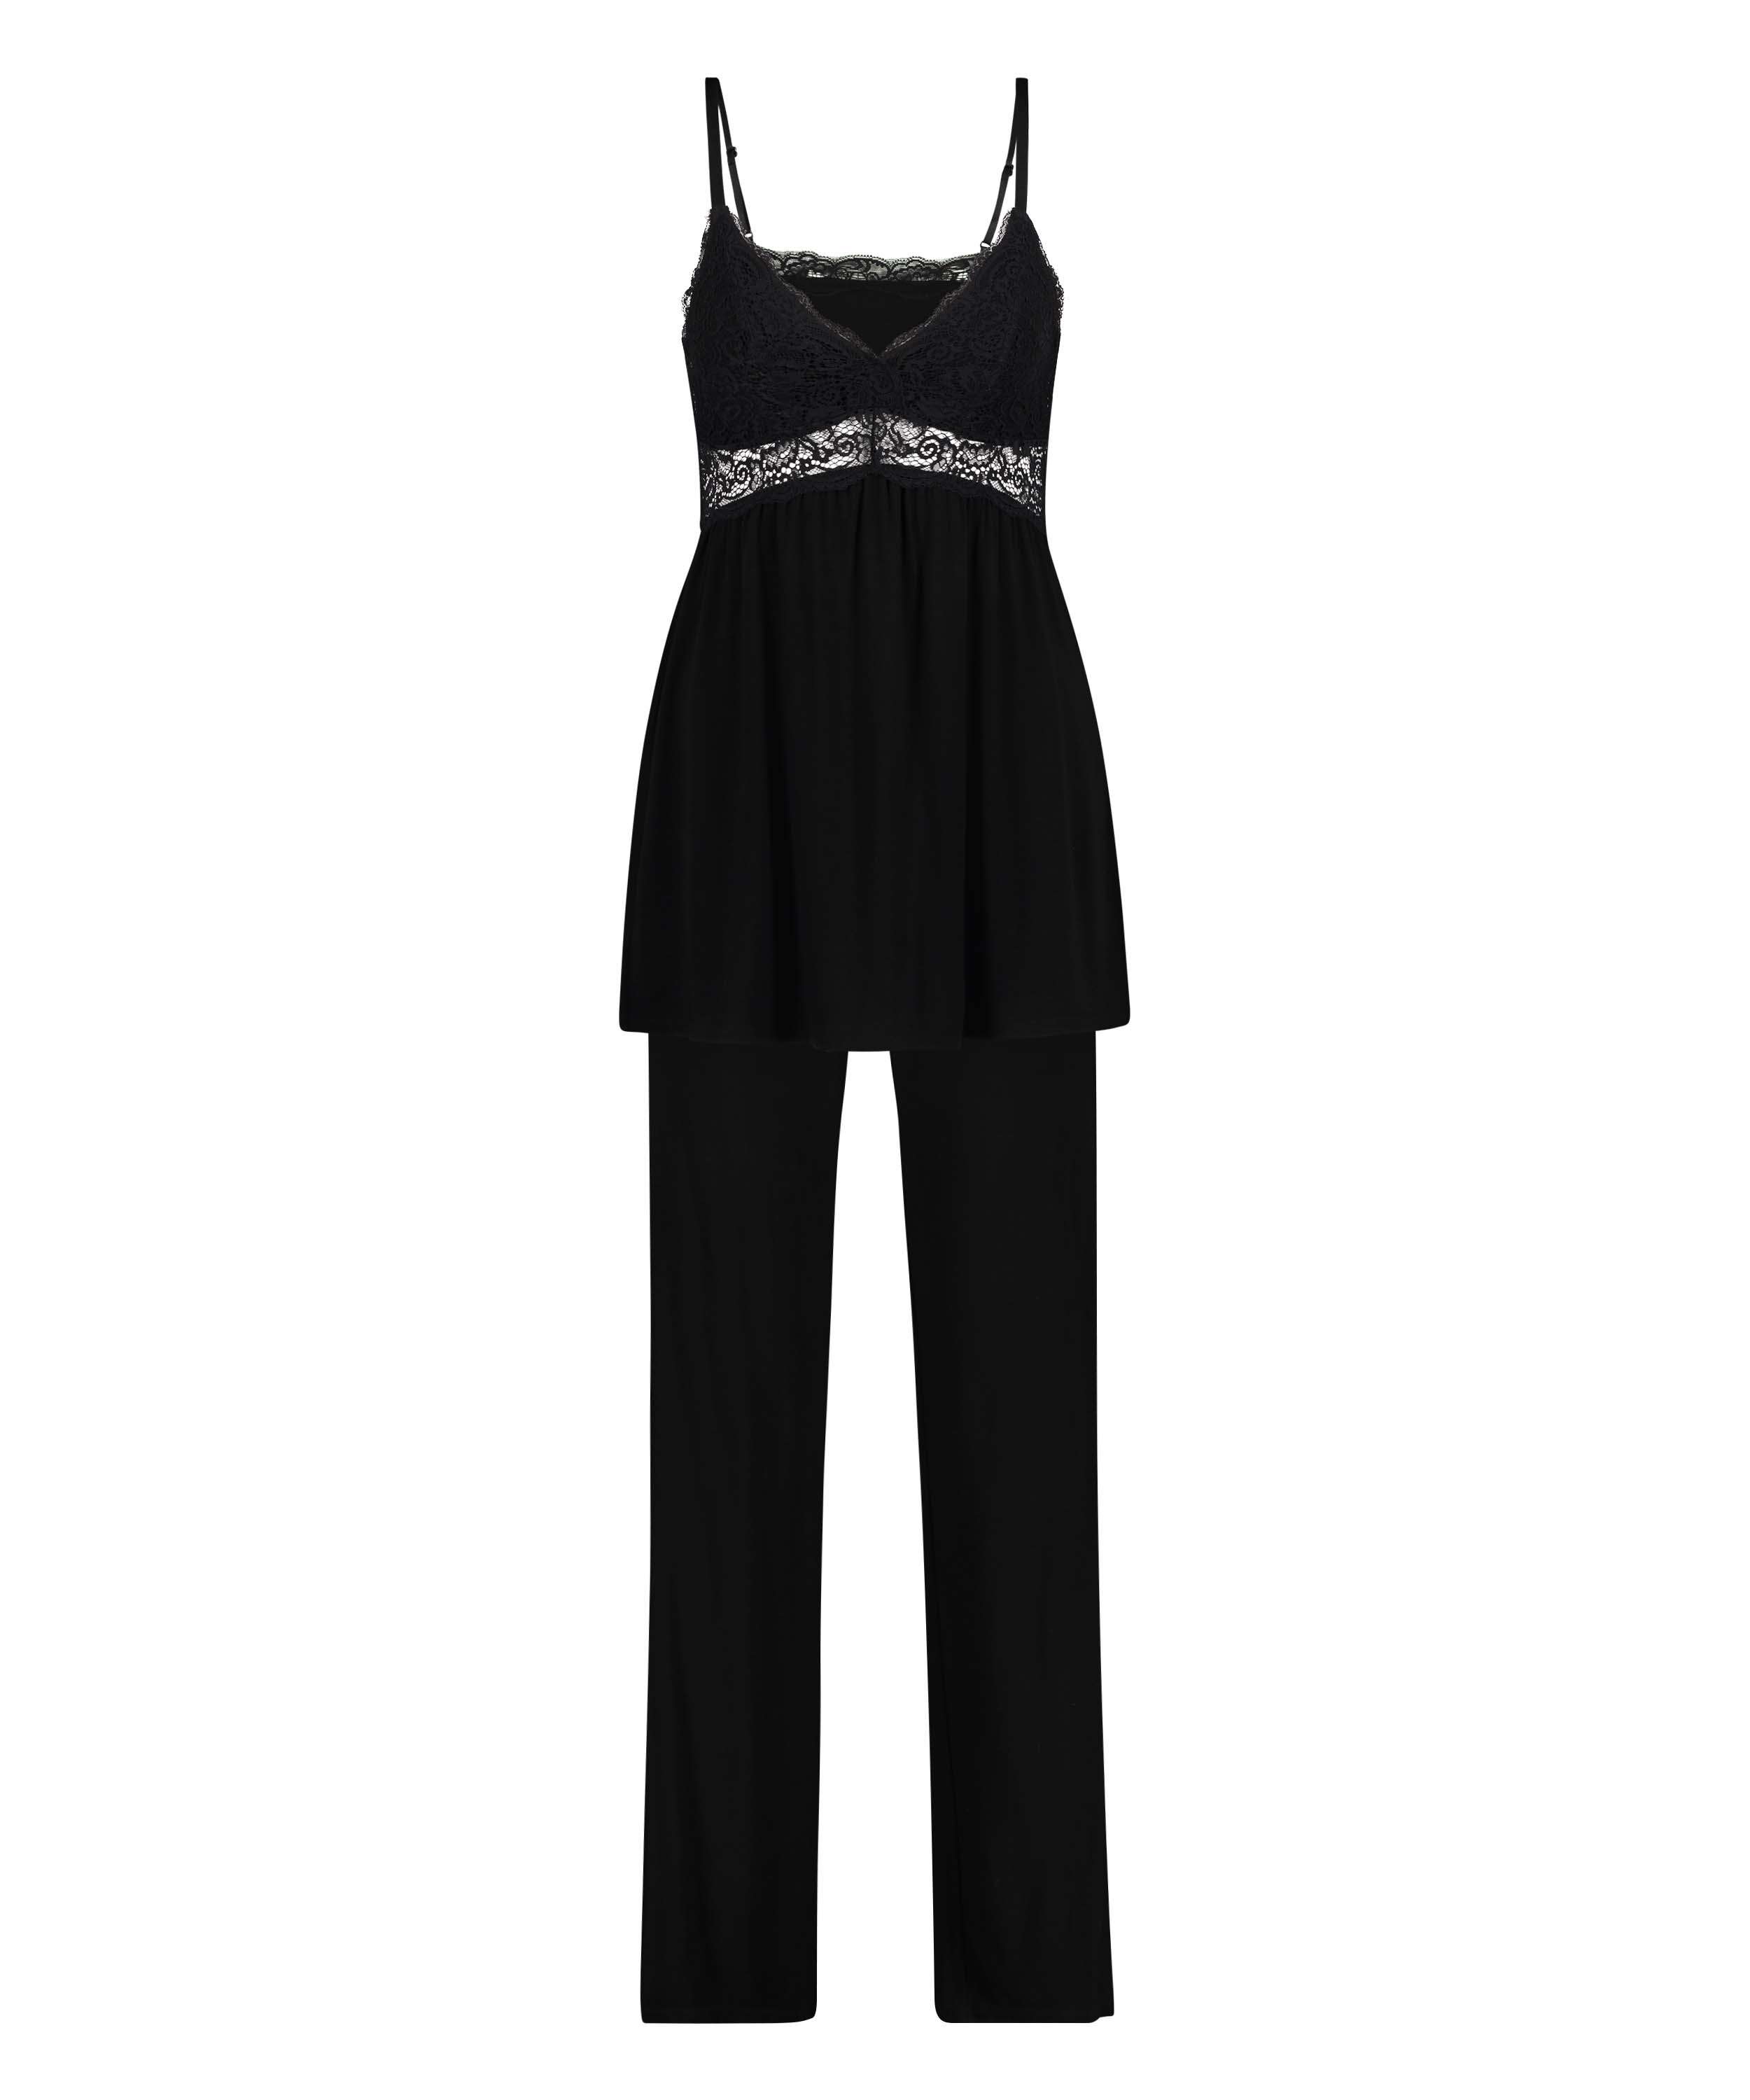 Vera Lace Pyjama Set, Black, main